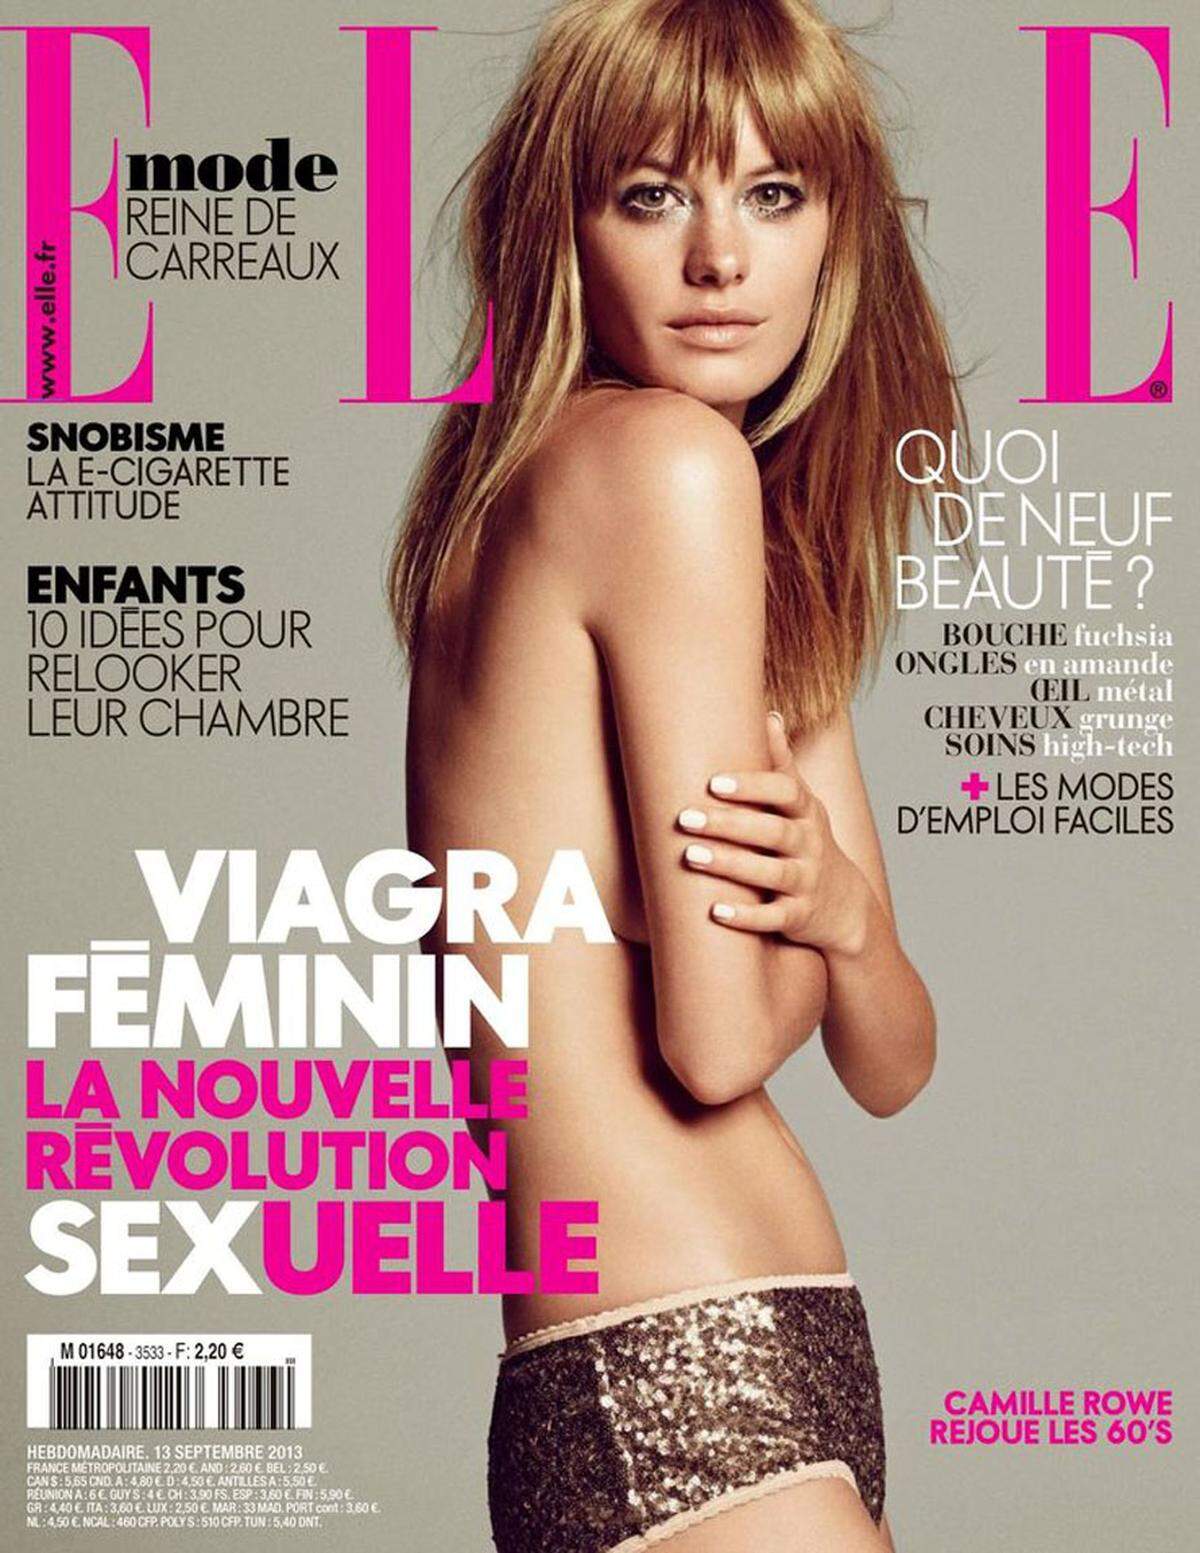 Camille Rowe stand schon für Victoria's Secret, die Bademodenfirma Seafolly aber auch Dior vor der Kamera.